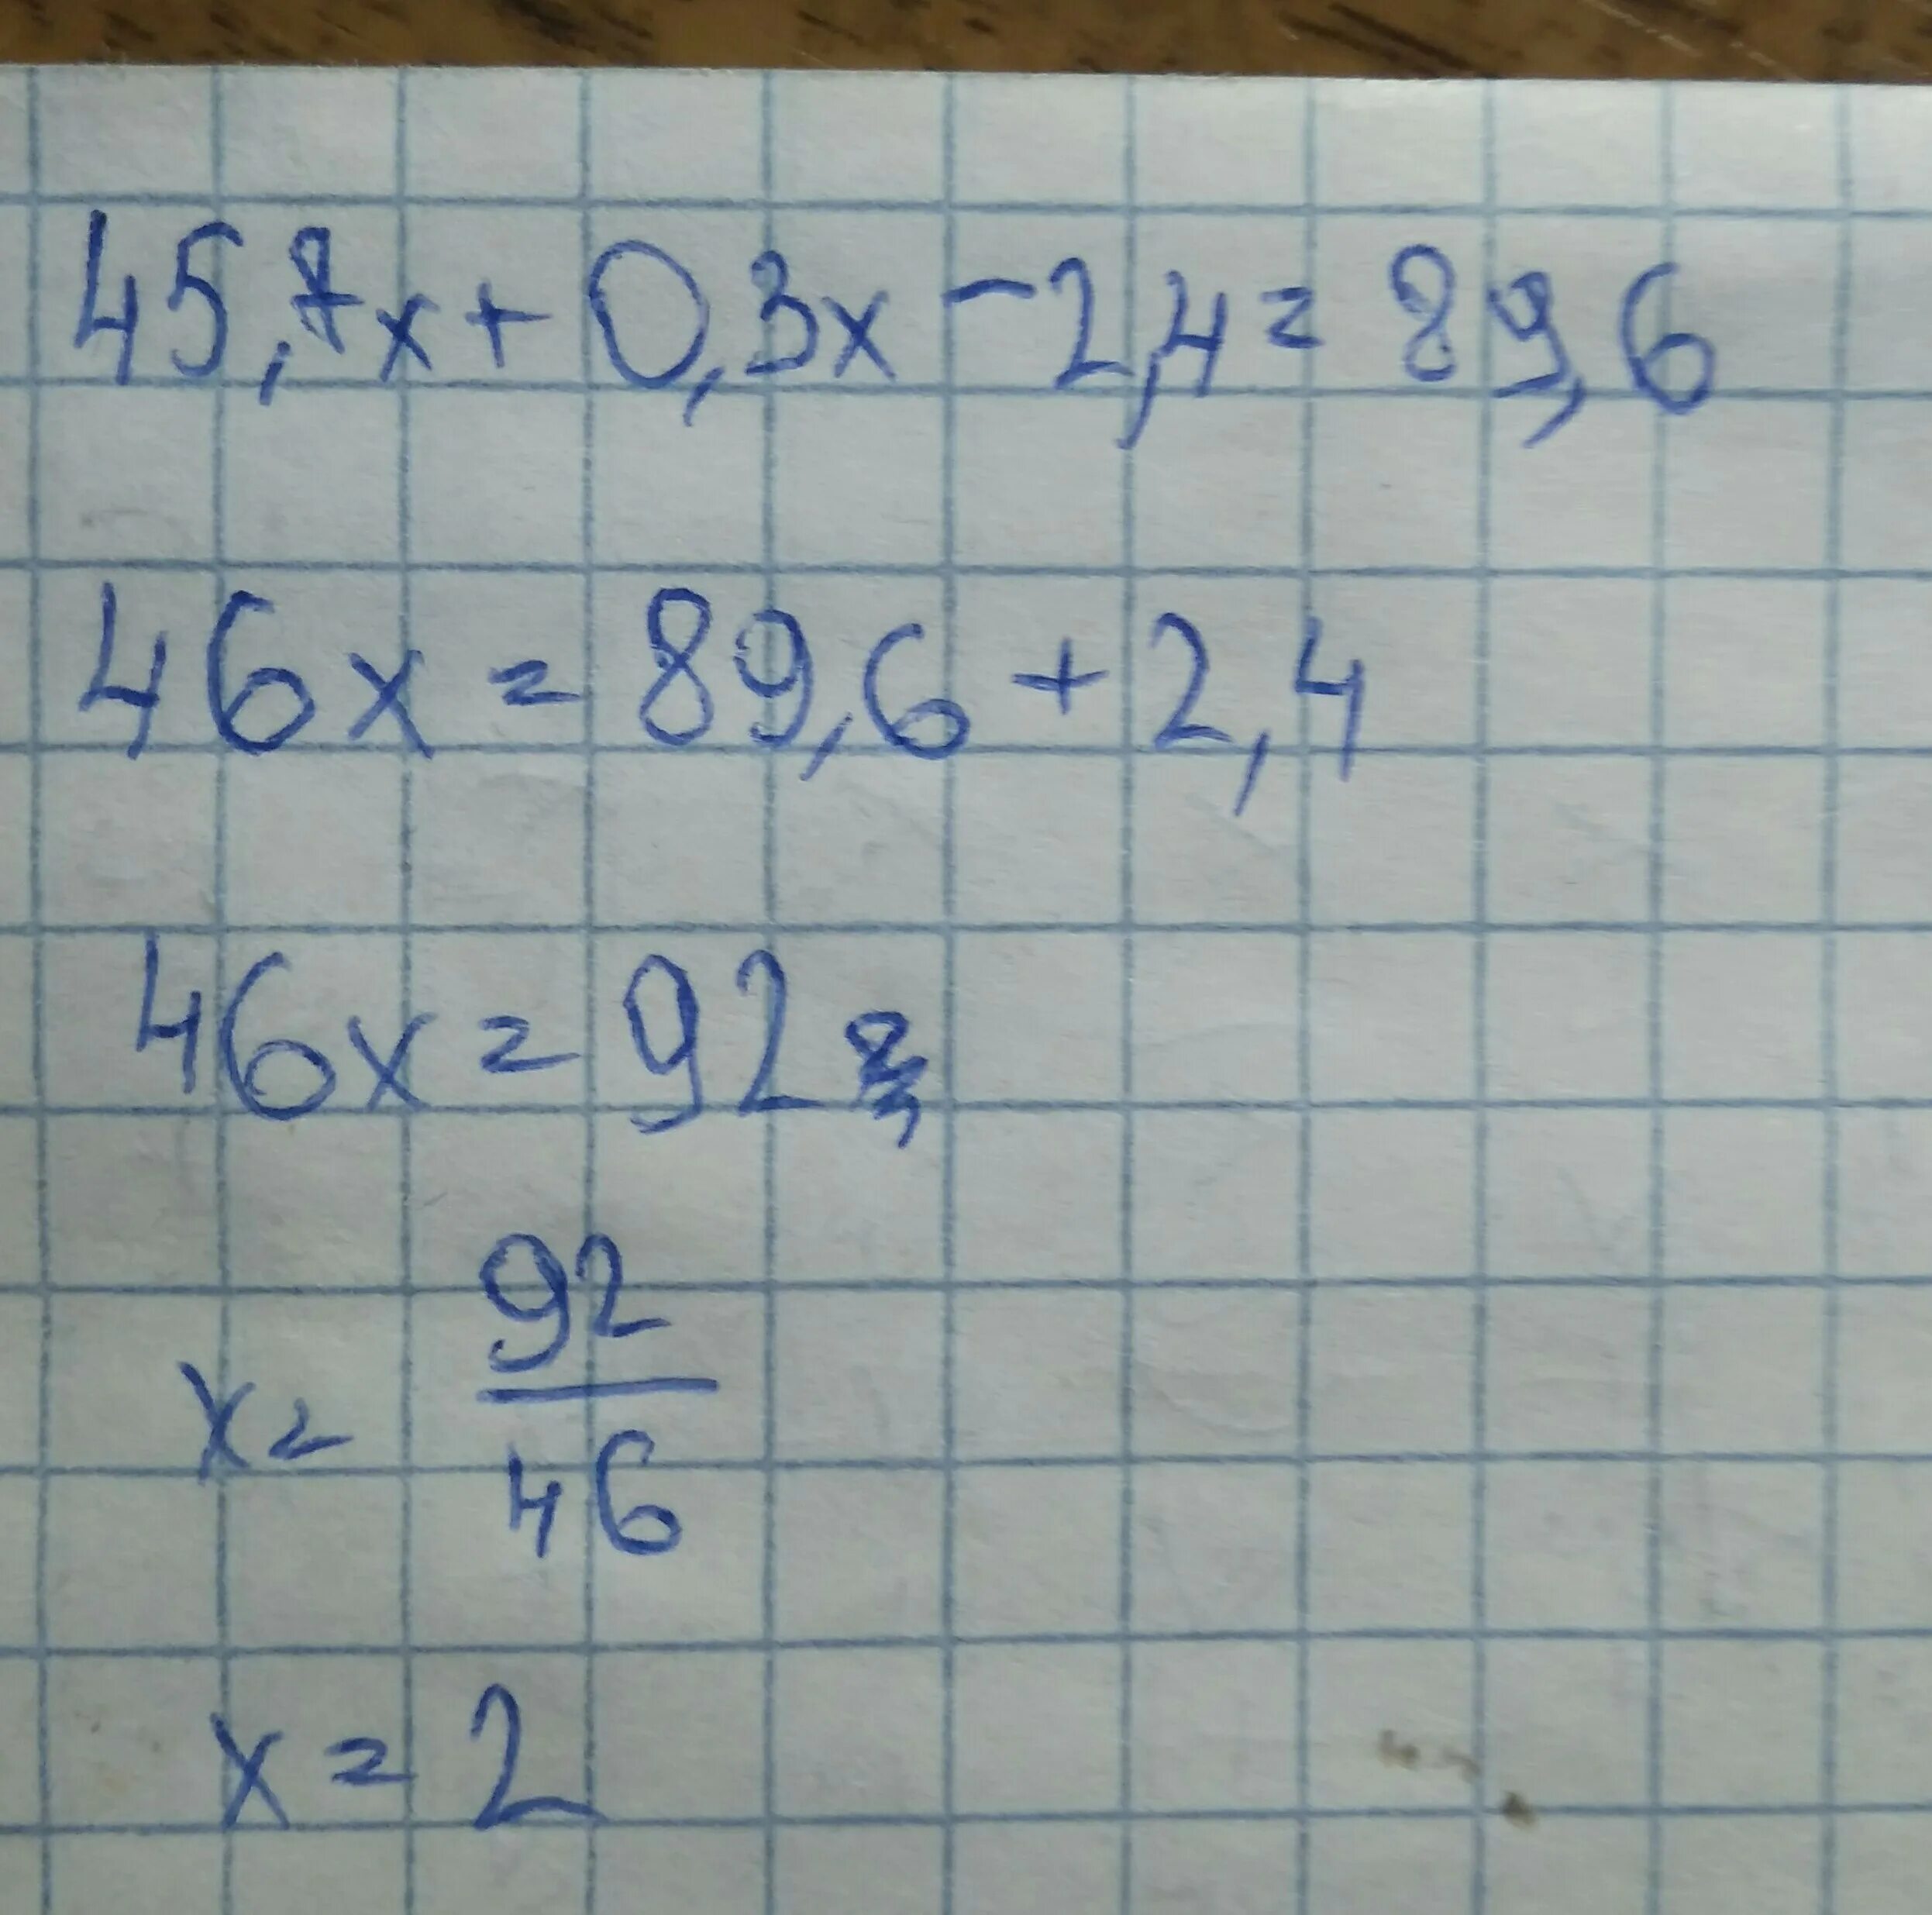 3x 7 0 ответ. 45.7Х+0.3Х-2.4 89.6 решение. Решите уравнение 45.7х+0.3х-2.4 89.6. 45 7х+0.3-2.4 89.6. 45 7х 0 3х-2 4 89 6.